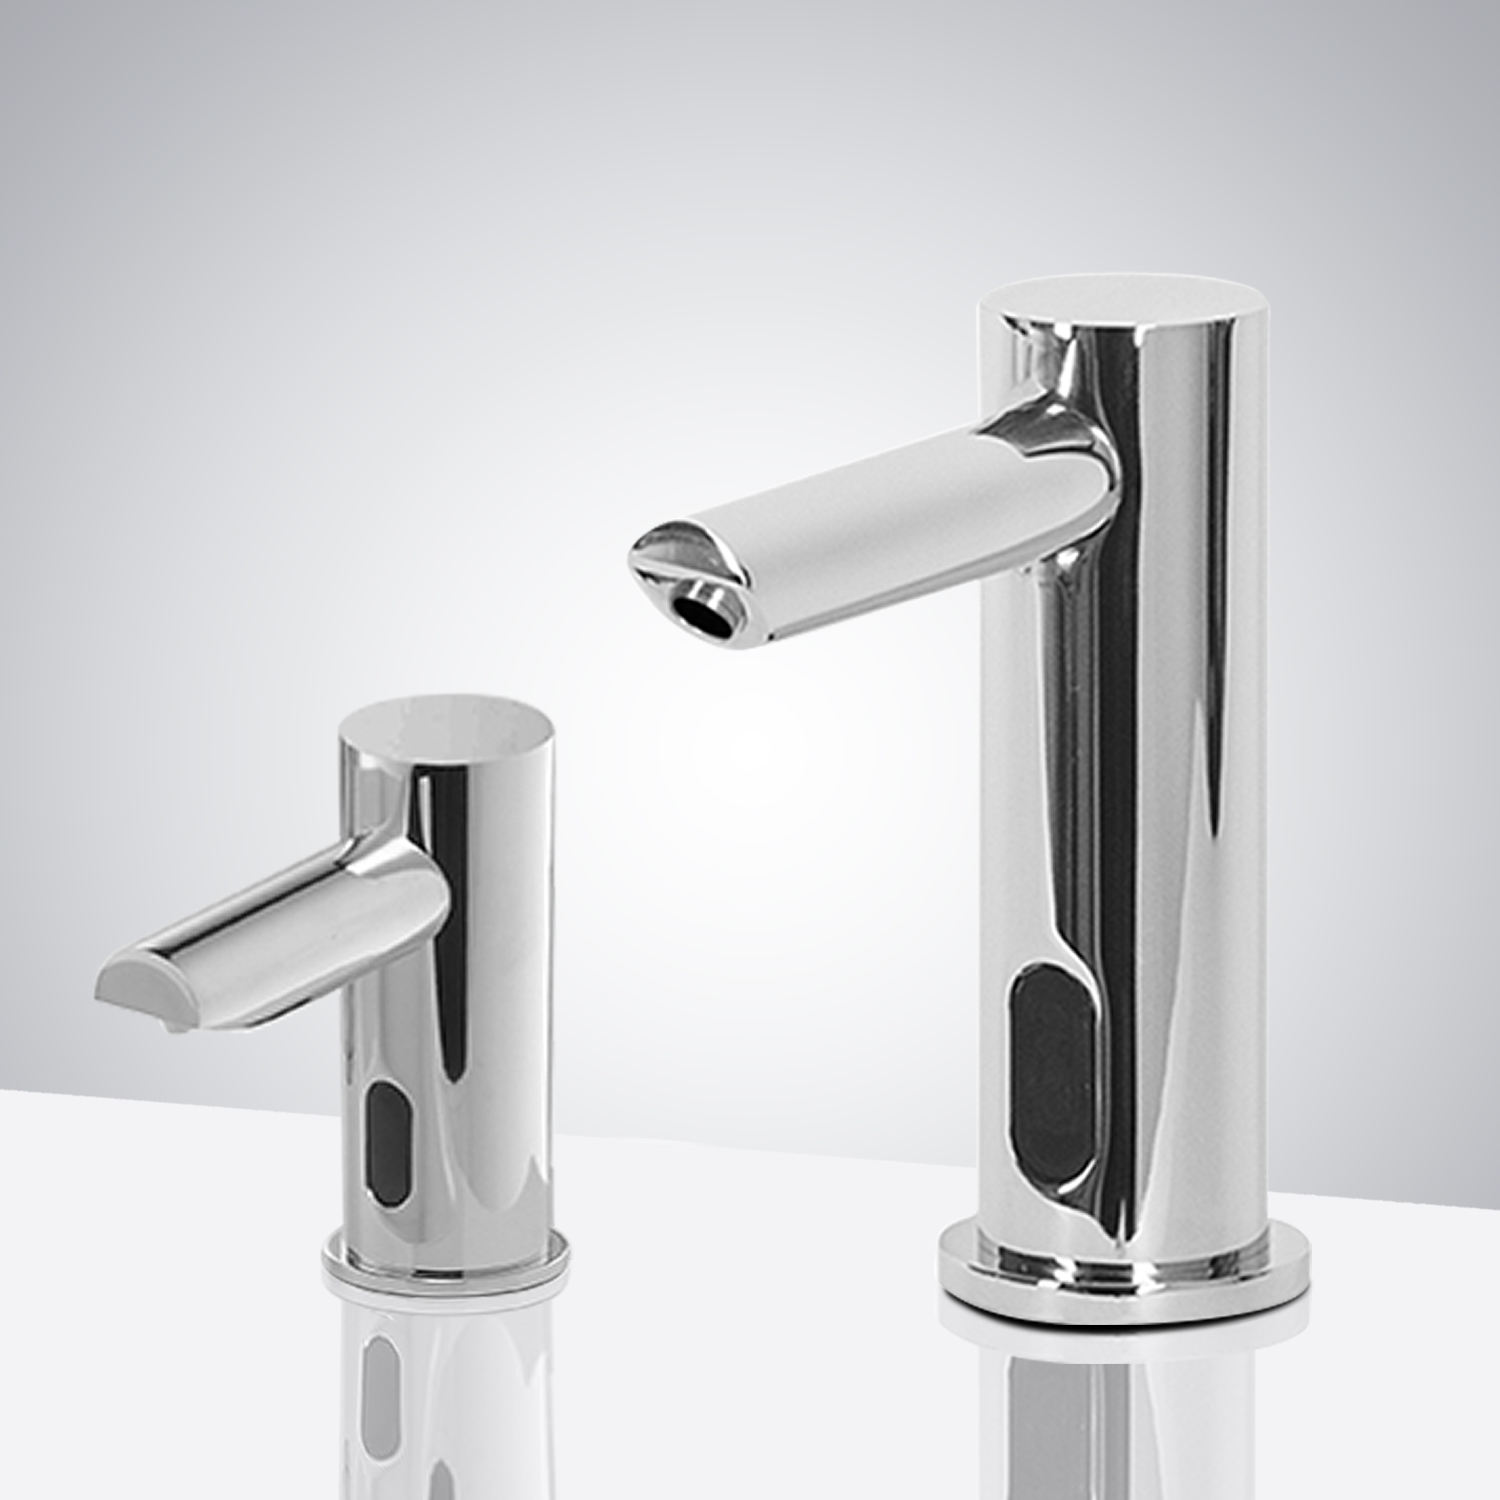 Fontana Le Havre Freestanding Chrome Motion Sensor Faucet & Automatic Liquid Soap Dispenser for Restrooms